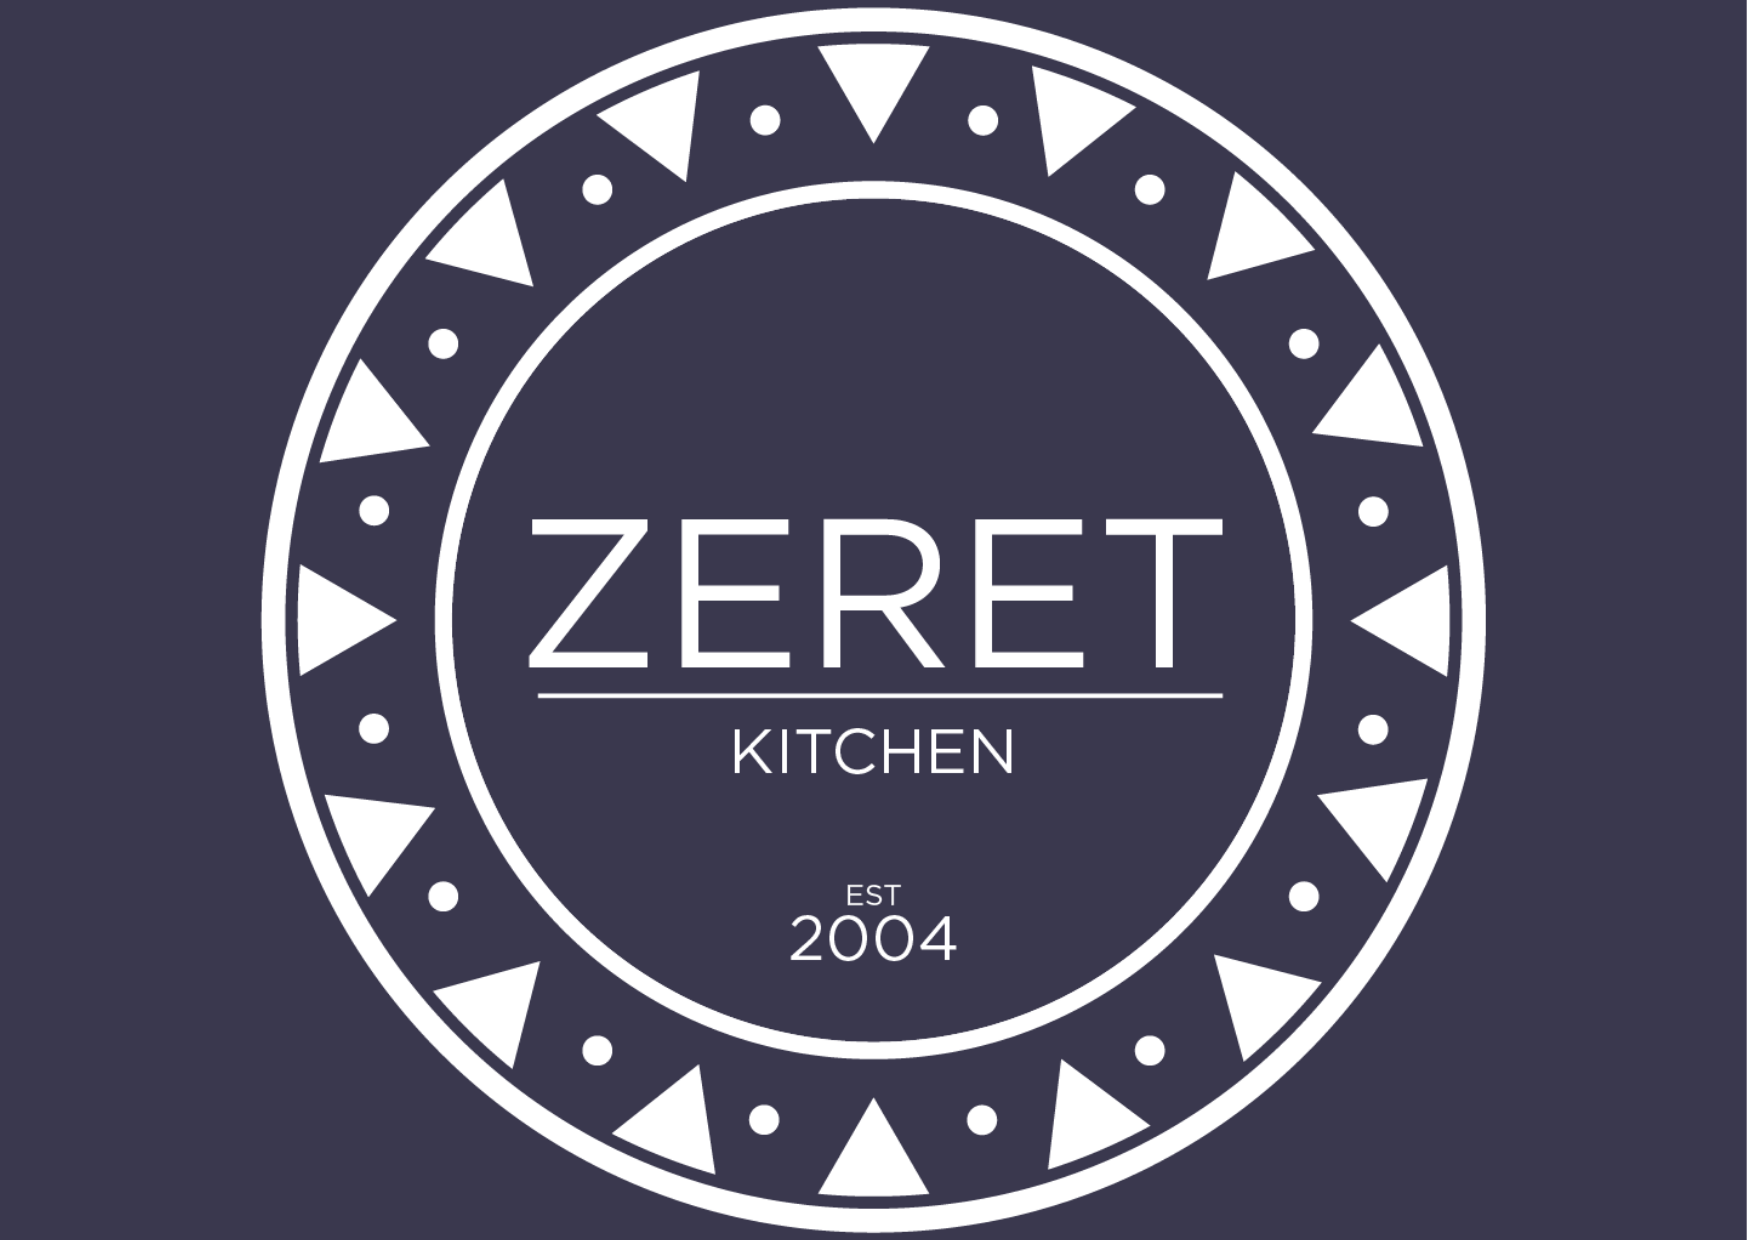 Zeret Kitchen - Ethiopian Cuisine in London